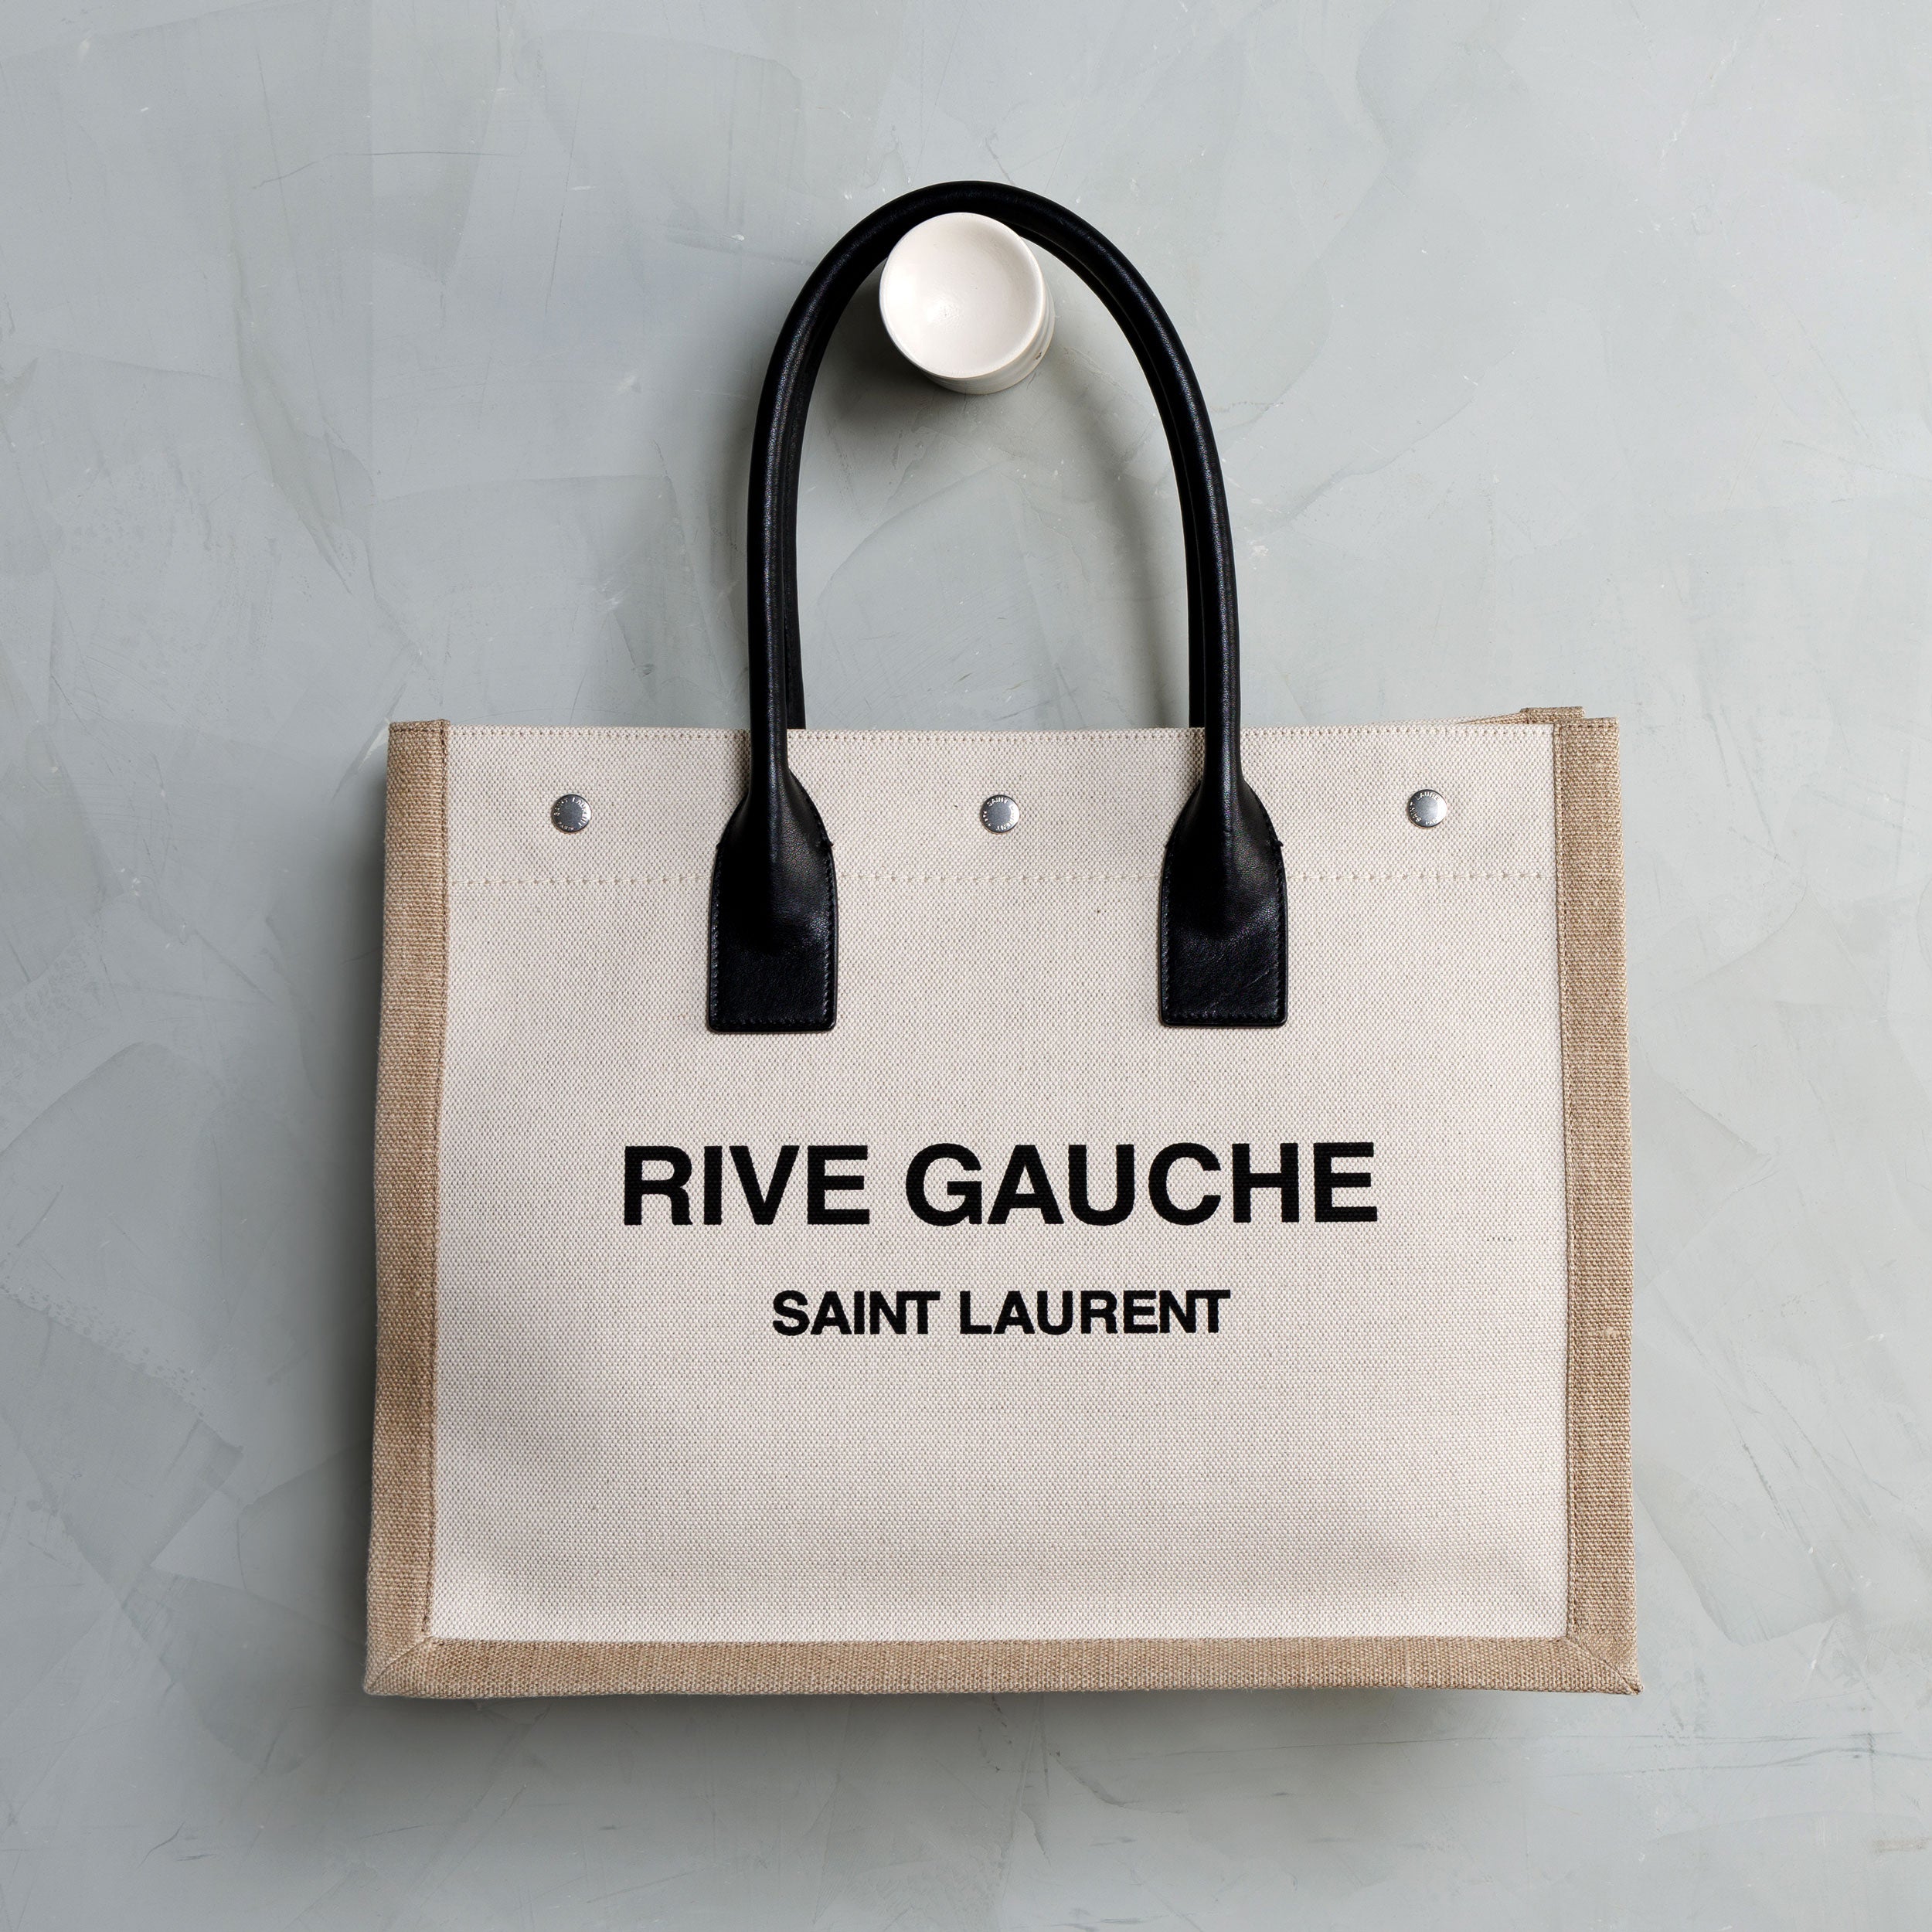 Saint Laurent New Designer Handbags for Women